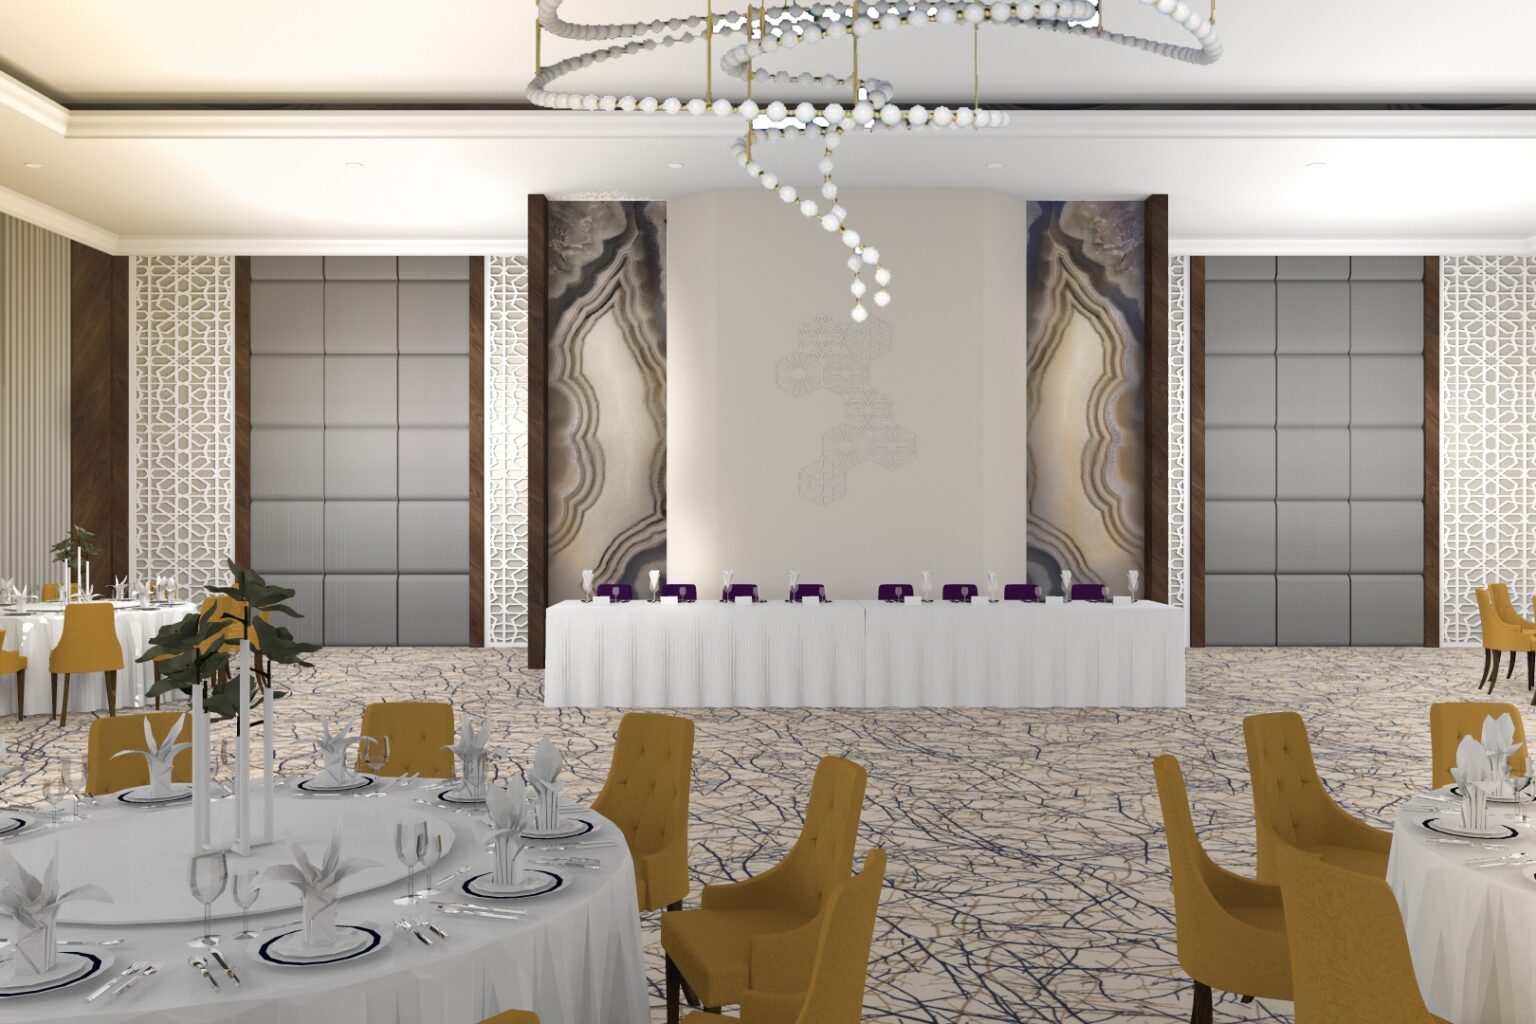 Sala de evenimente de lux, cu un design interior futurist si elemente clasice, cum ar fi candelabrele elegante si opulente.